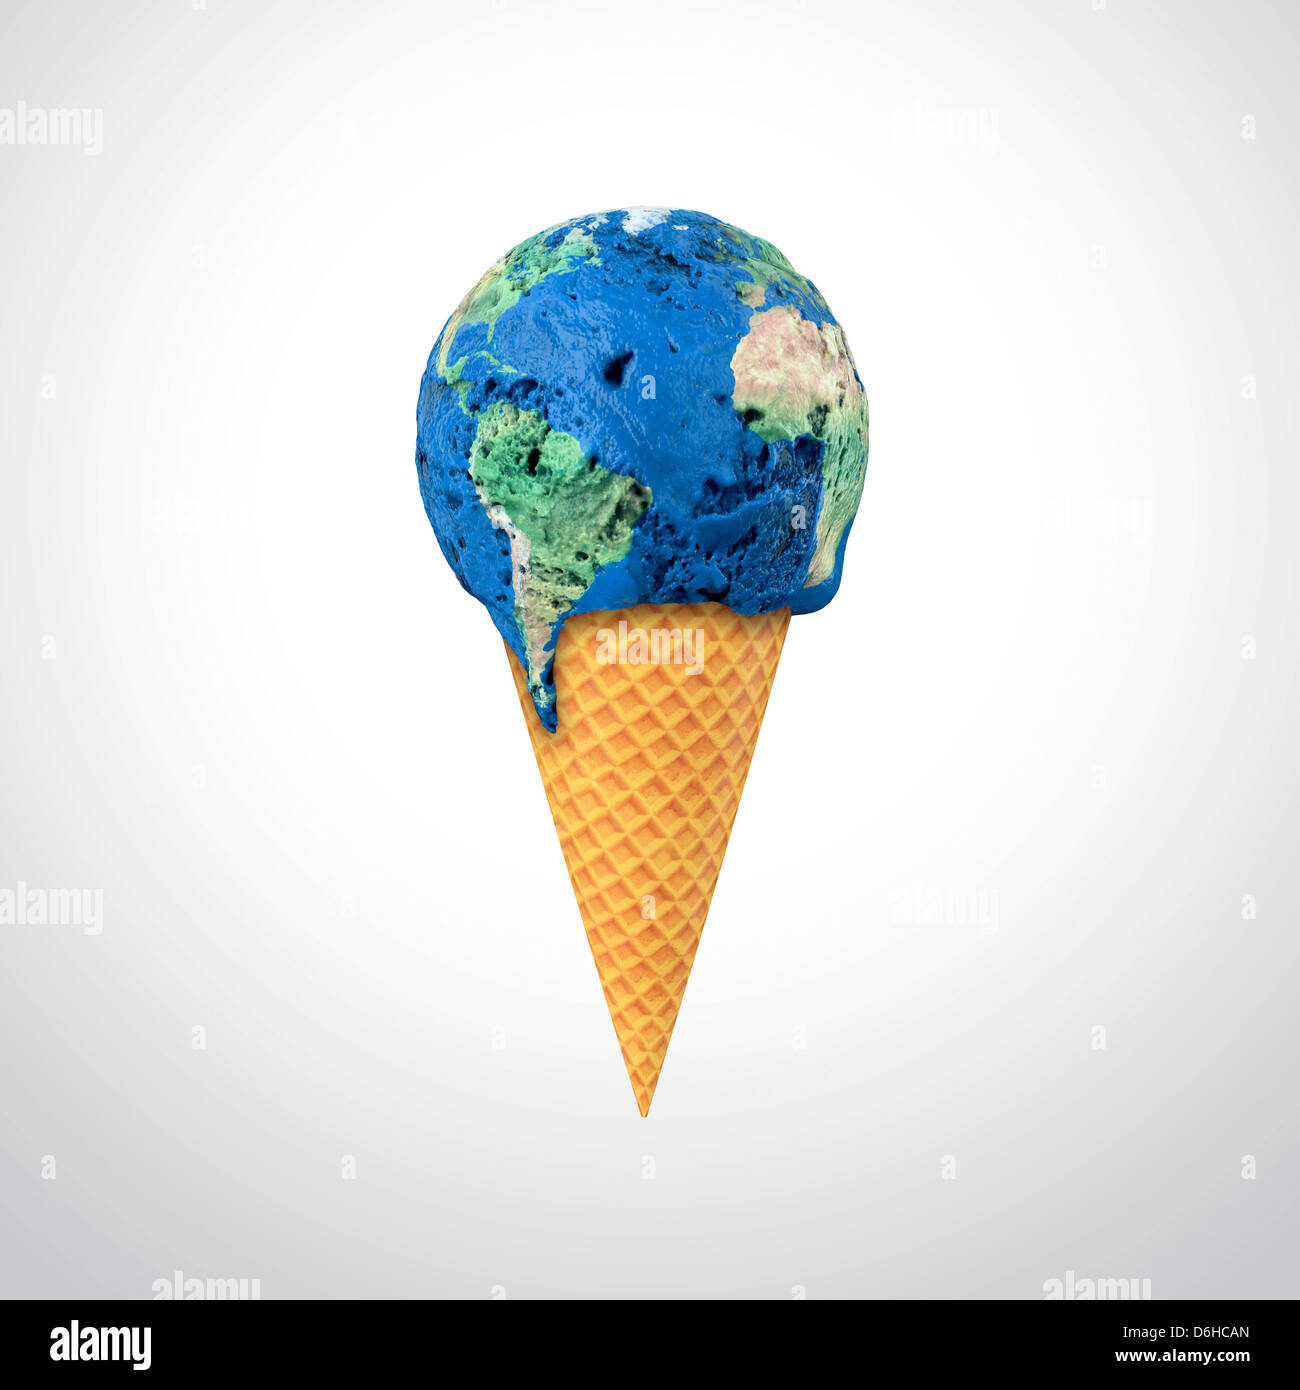 Le réchauffement climatique, conceptual artwork Banque D'Images